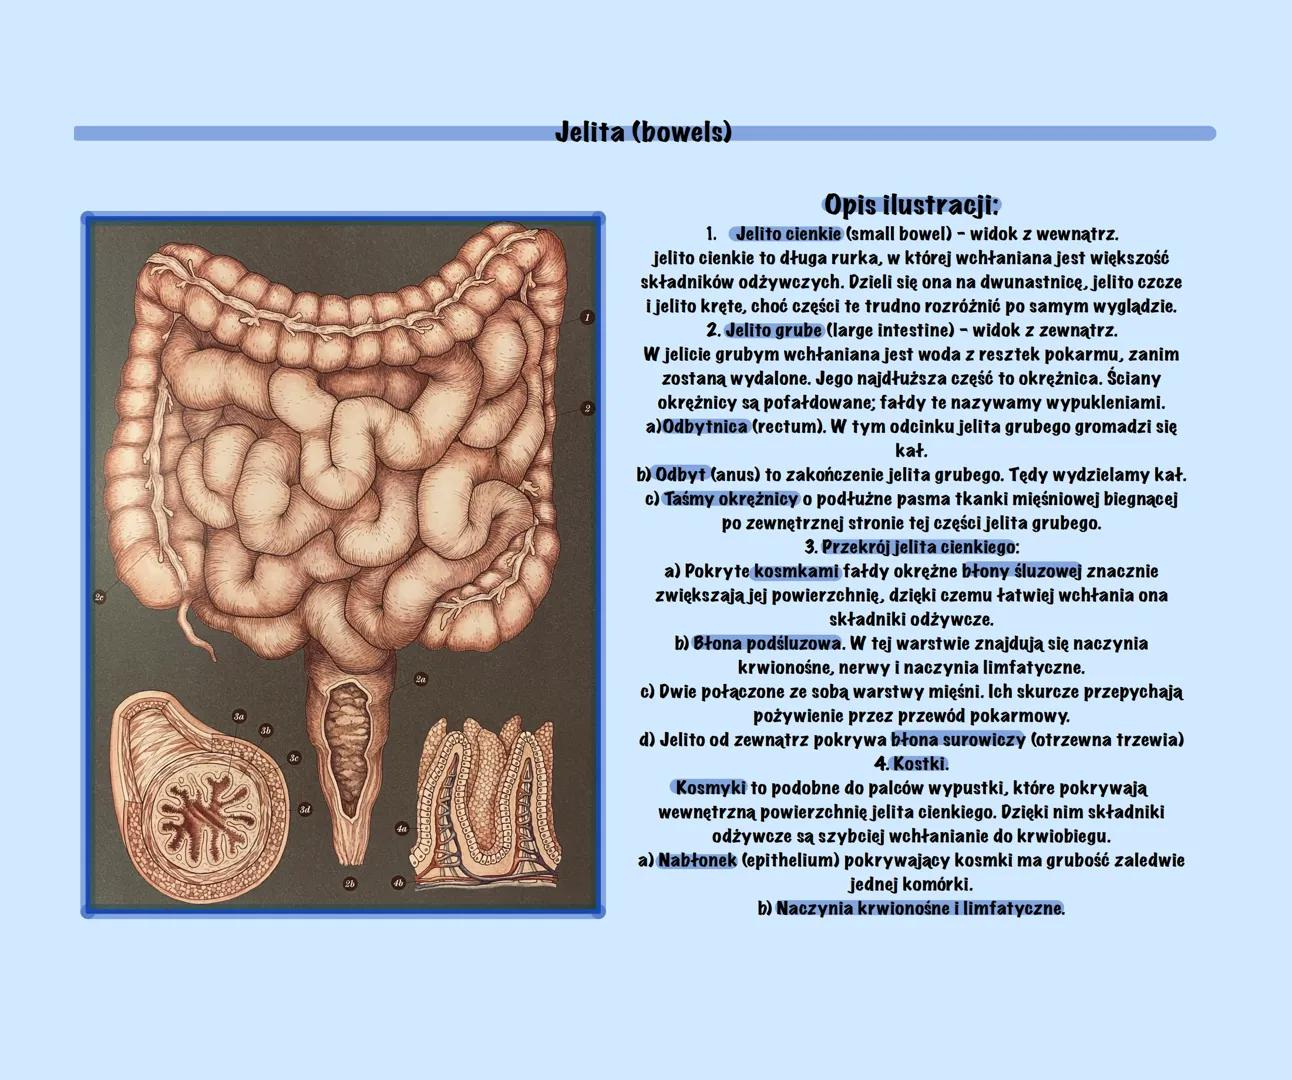 g
Uklad Pokarmowy Z Elementami
Języka Angielskiego
@Basic2115
Prezentacja Budowa układu pokarmowego (Structure of the digestive system)
Ukła